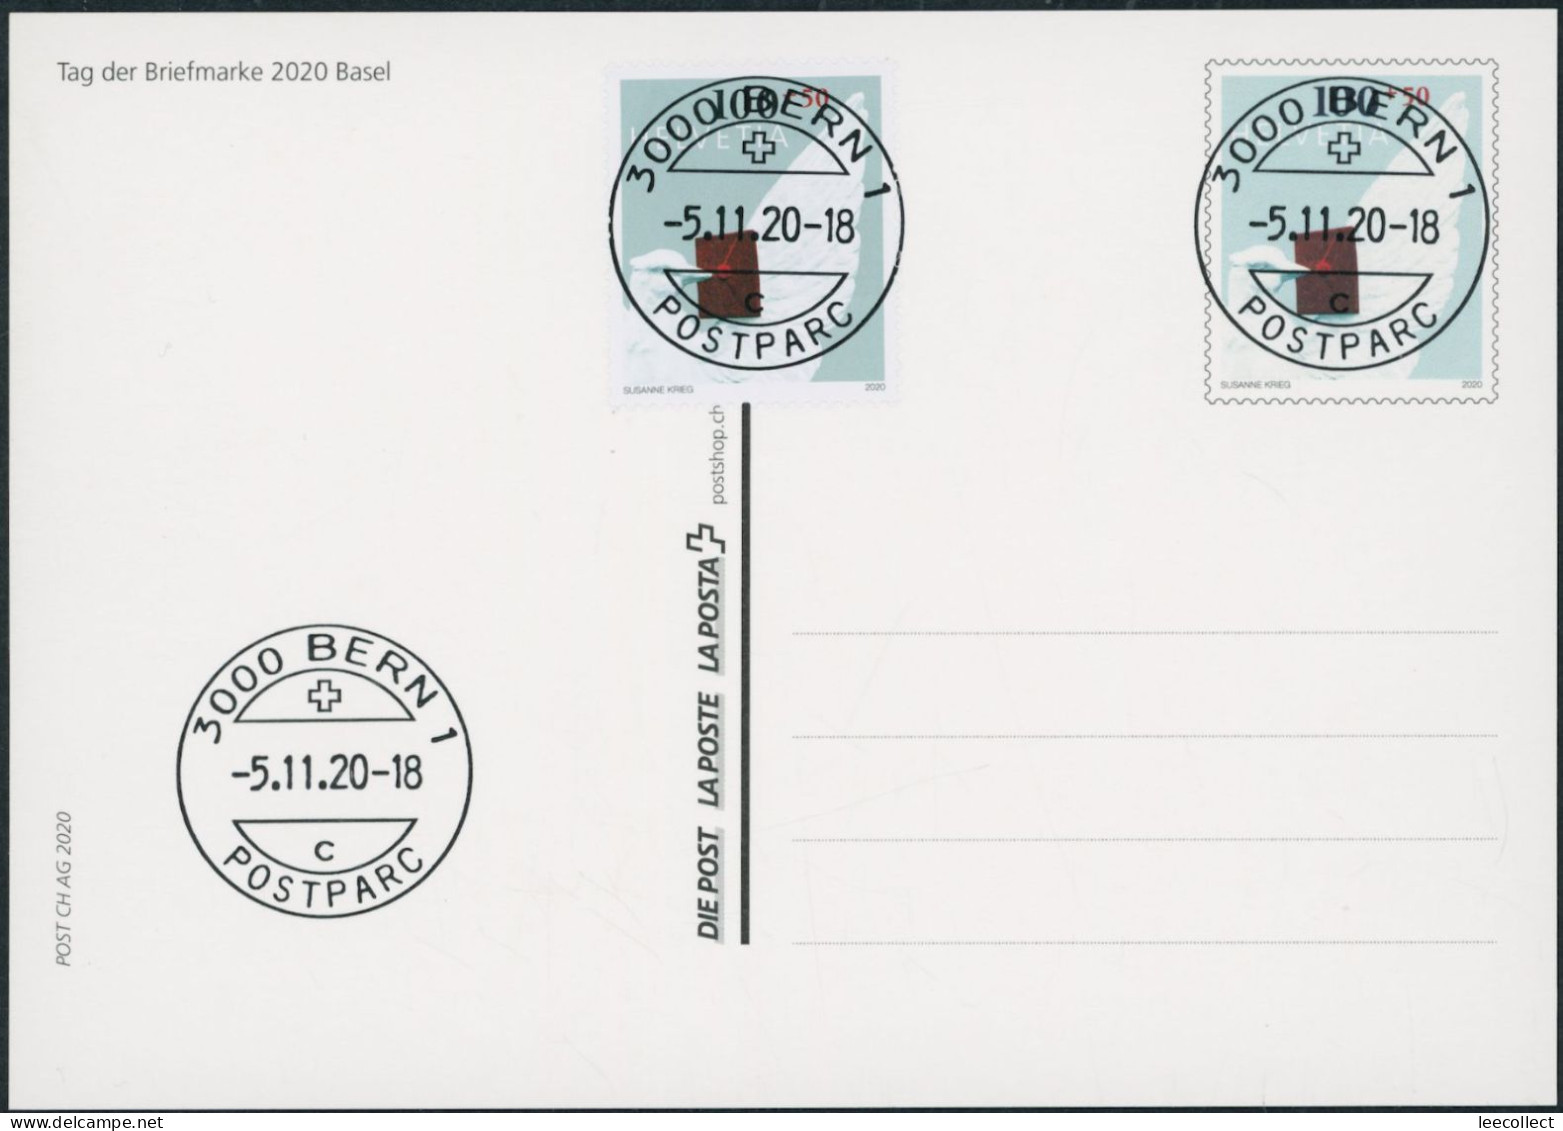 Suisse - 2020 - Tag Der Briefmarke • Basel - Bildpostkarte - Combo FDC ET - Ersttag Voll Stempel - Covers & Documents